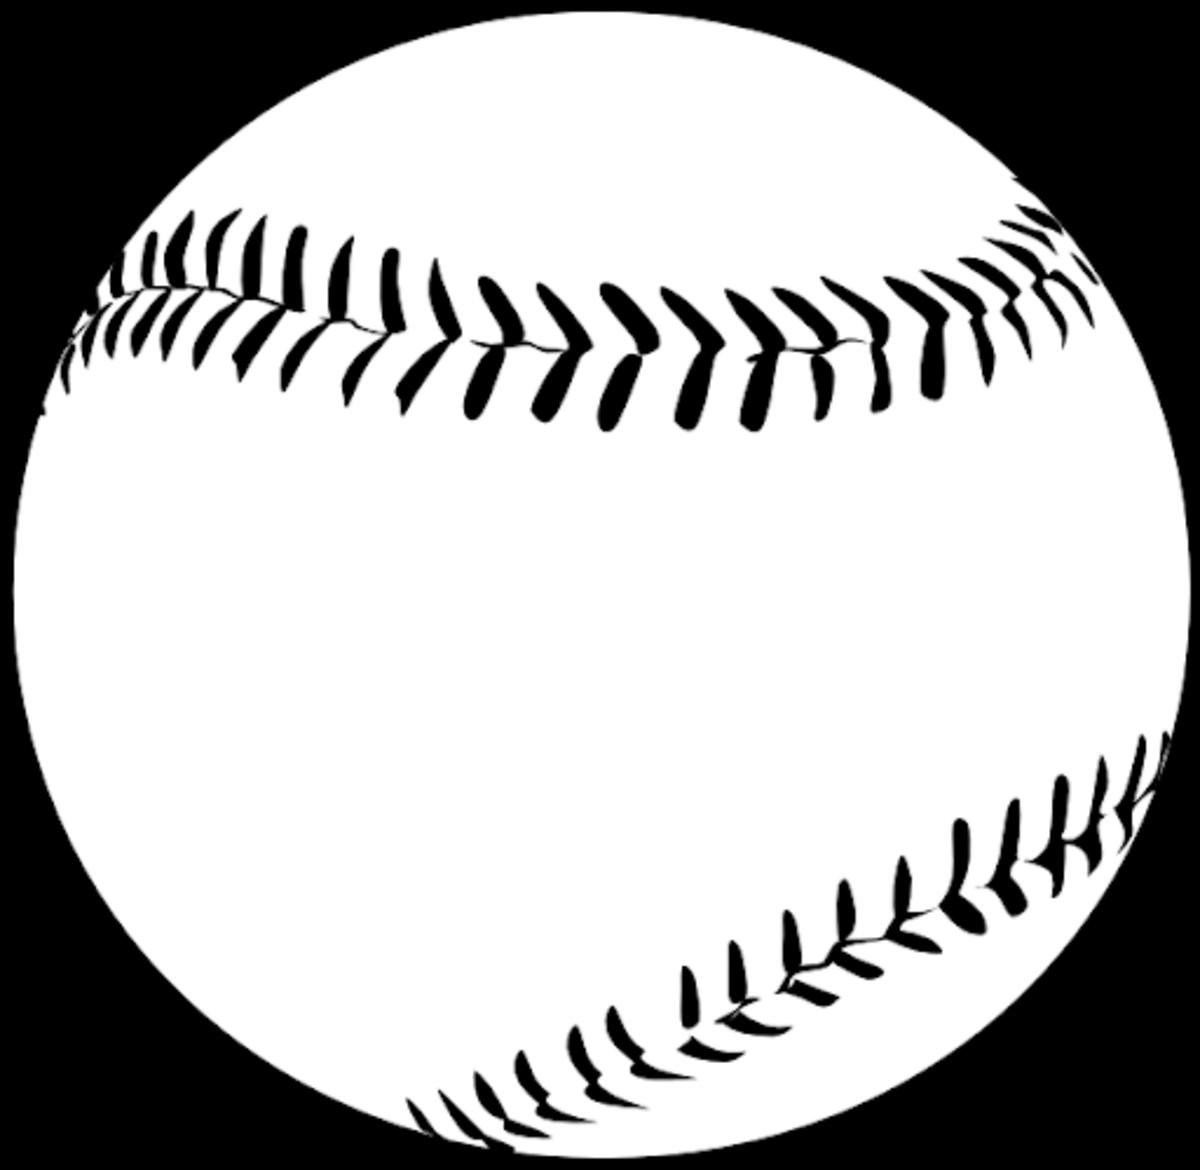 ASWA Baseball and Softball Rankings: April 15, 2021